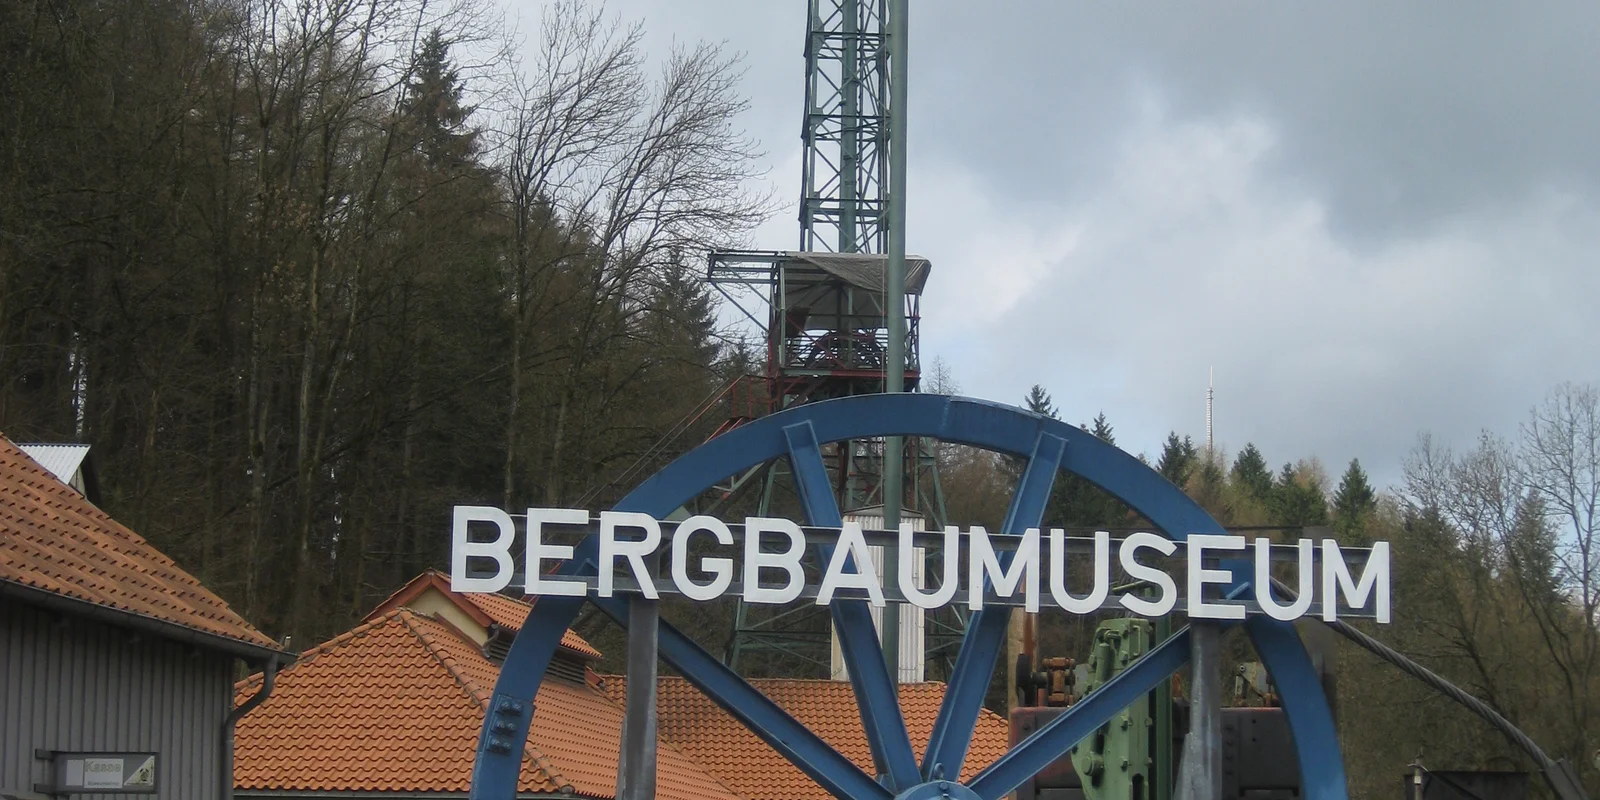 Großes Blaues Metallrad mit der Aufschrift "Bergbaumuseum"